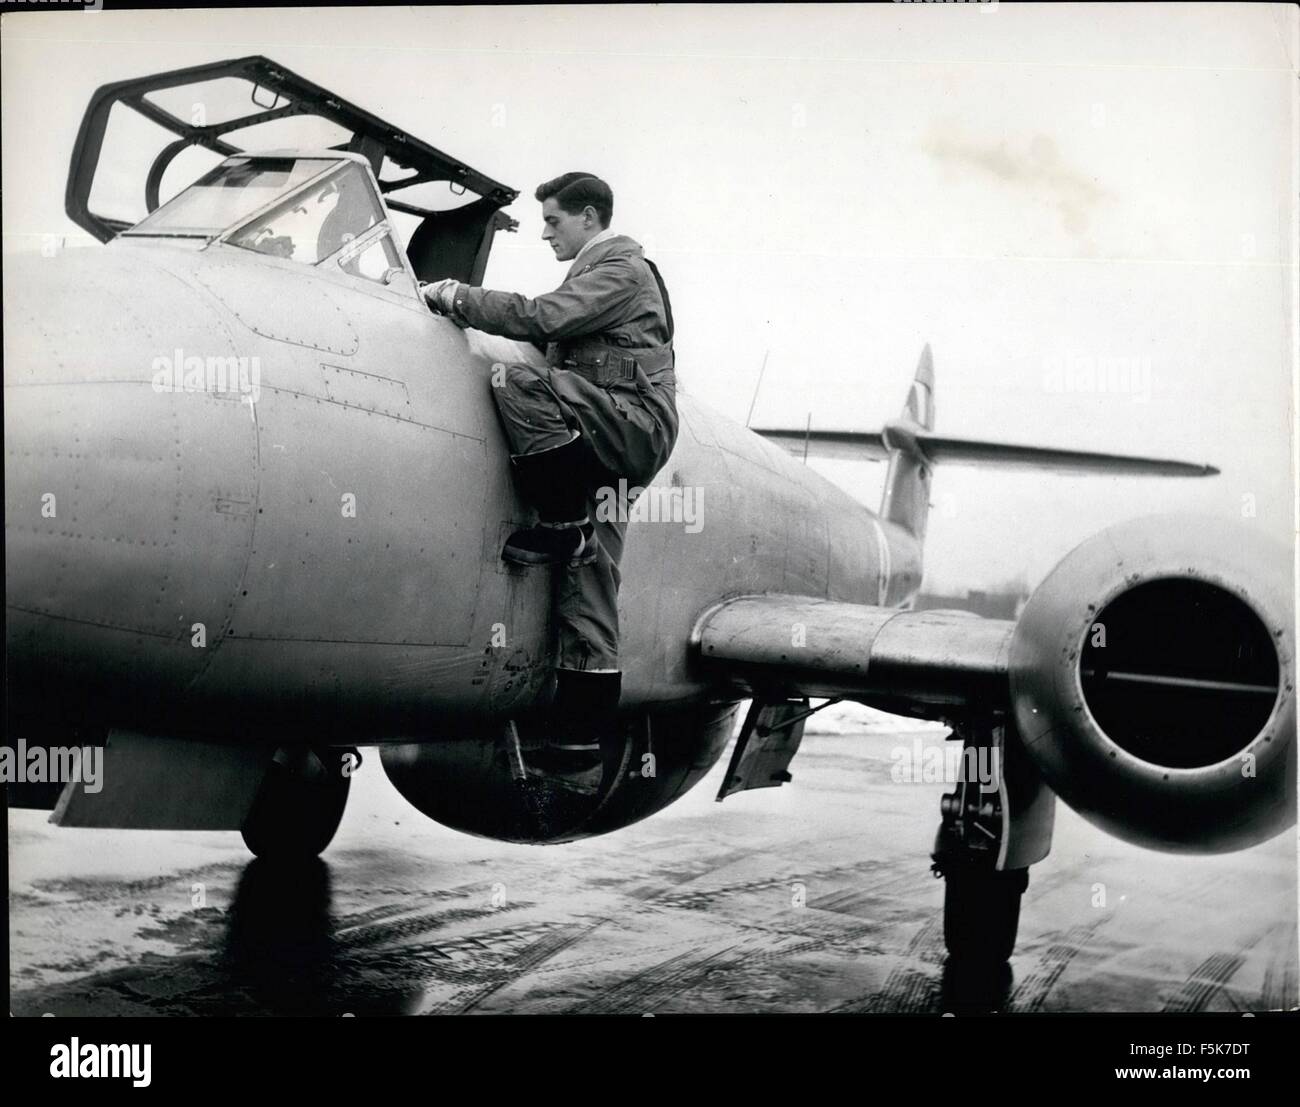 1962 - formazione degli equipaggi per il Canberra: Il futuro pilota riceve la sua formazione iniziale a Bassingbourn sul Meteor Mk. 7. Qui P/O. R.M. Hargreaves salite a bordo per il suo primo volo di formazione. (Credito Immagine: © Keystone Pictures USA/ZUMAPRESS.com) Foto Stock